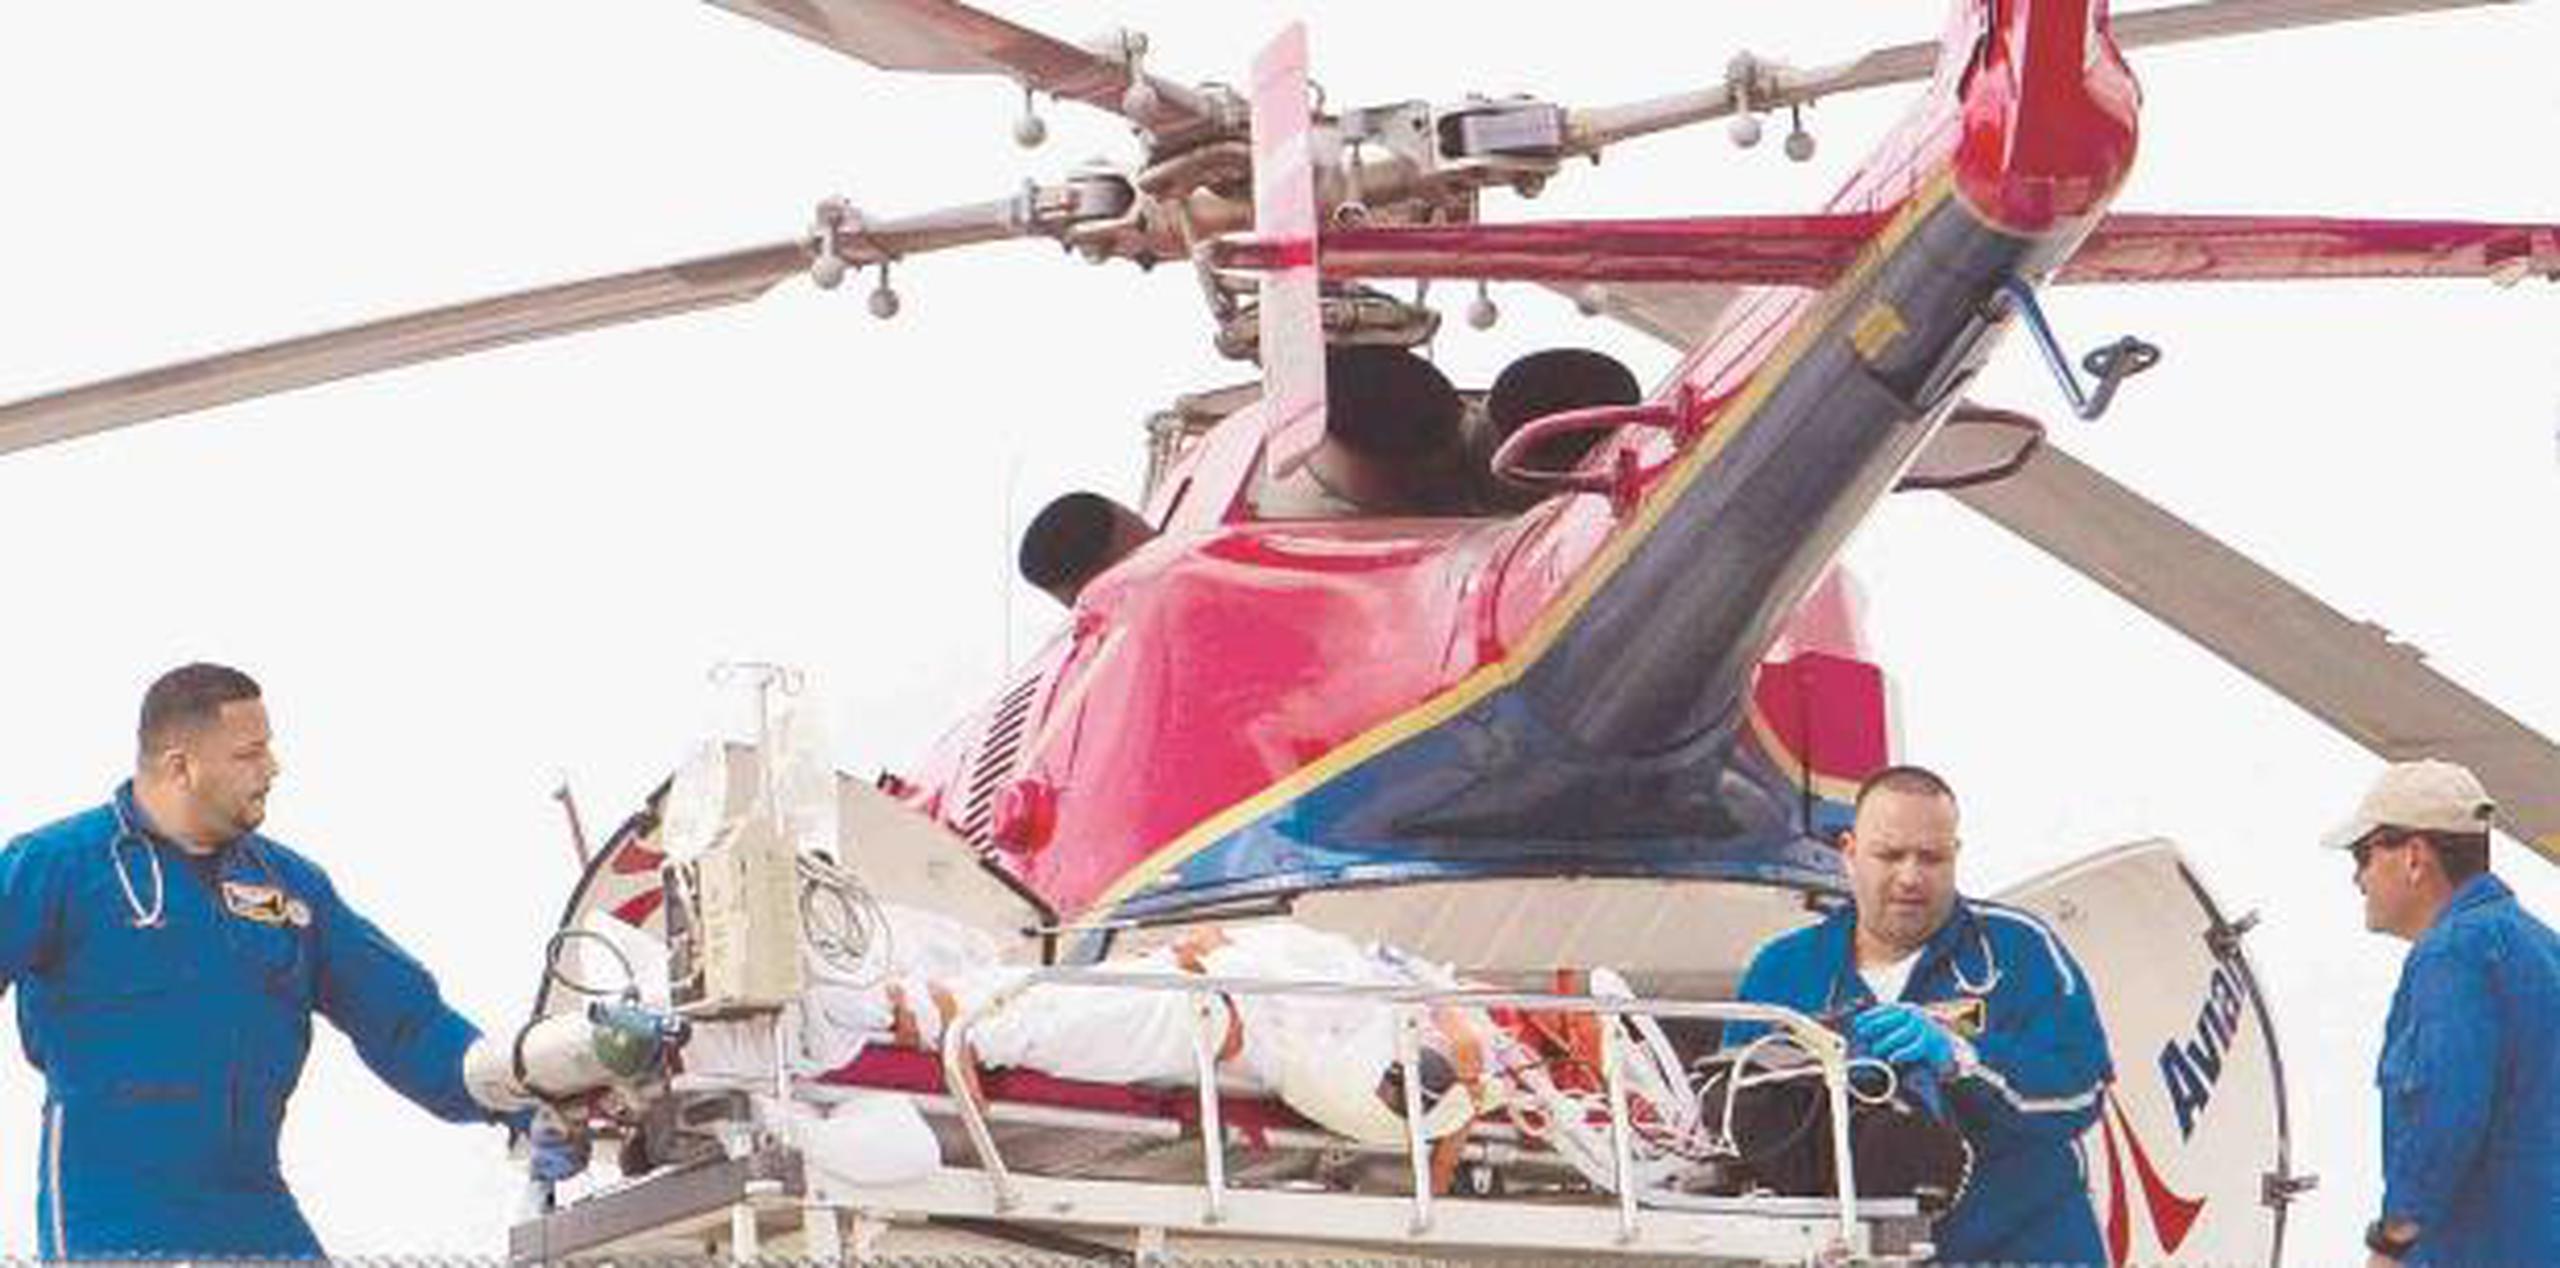 El herido fue transportado al Centro Médico de Puerto Rico en ambulancia aérea. (archivo)

